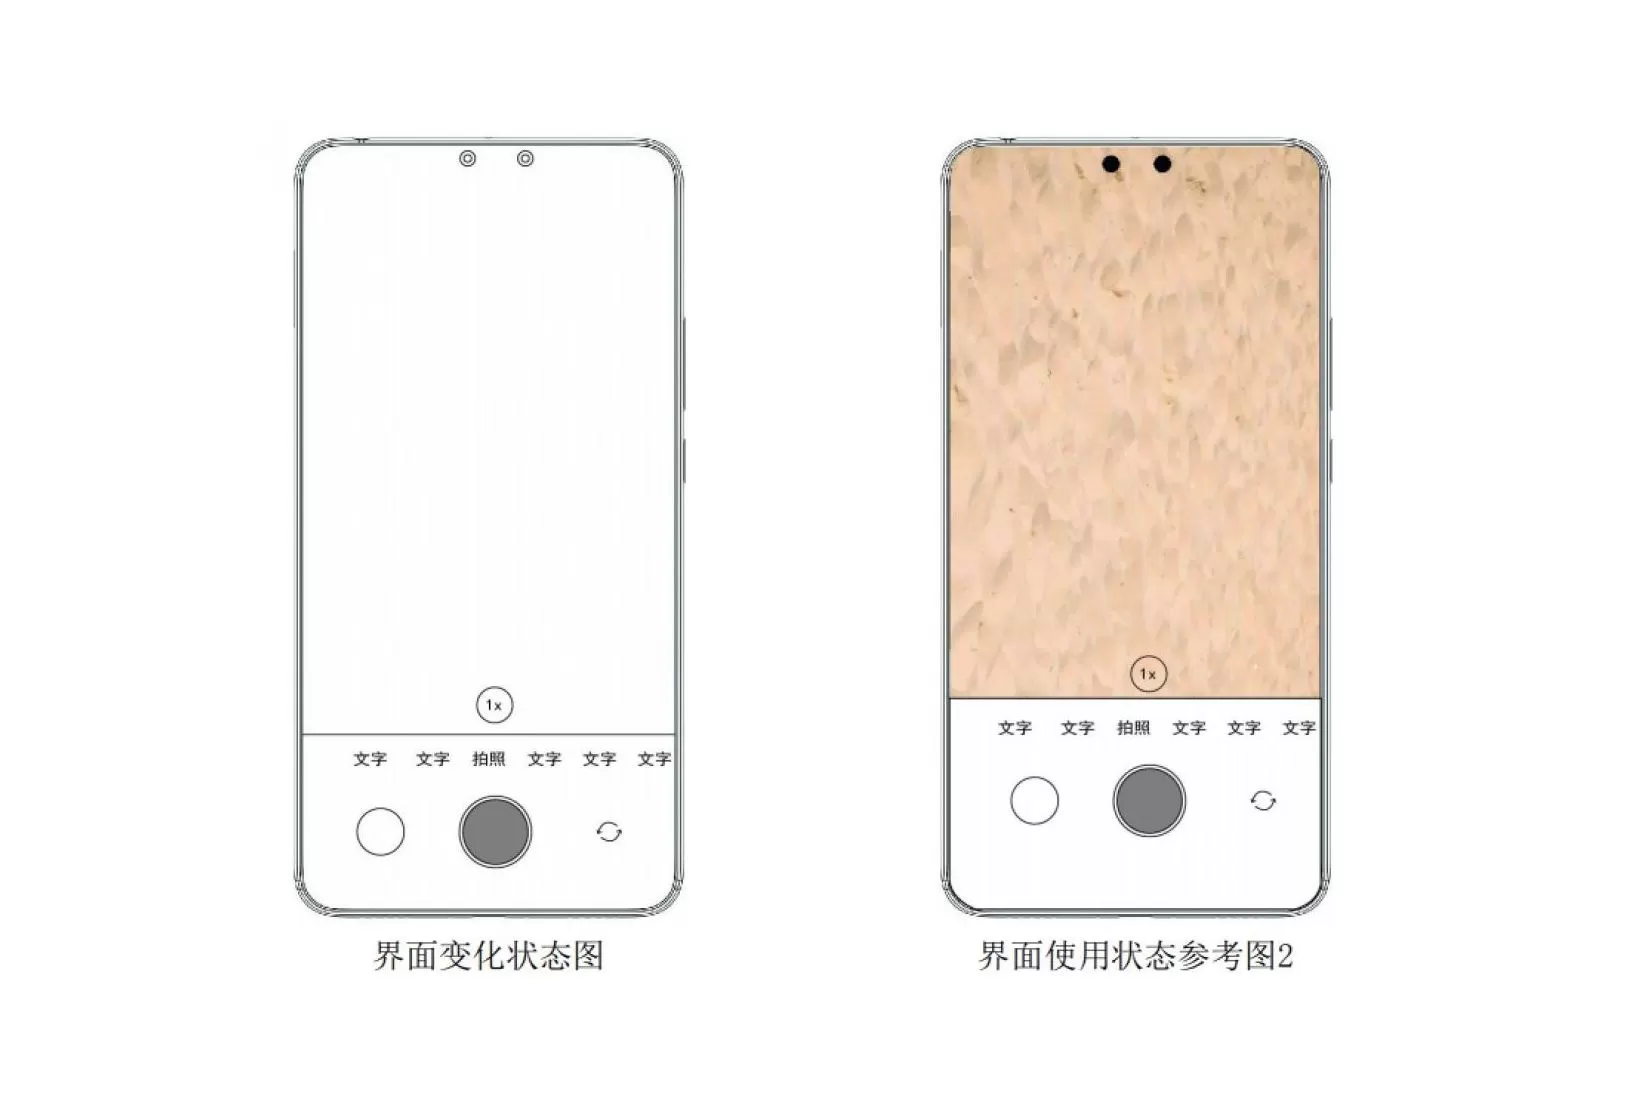 Xiaomi | Xiaomi | หลุดภาพ สิทธิบัตร Xiaomi ในการออกแบบกล้องเลนส์คู่ฝังในหน้าจอ